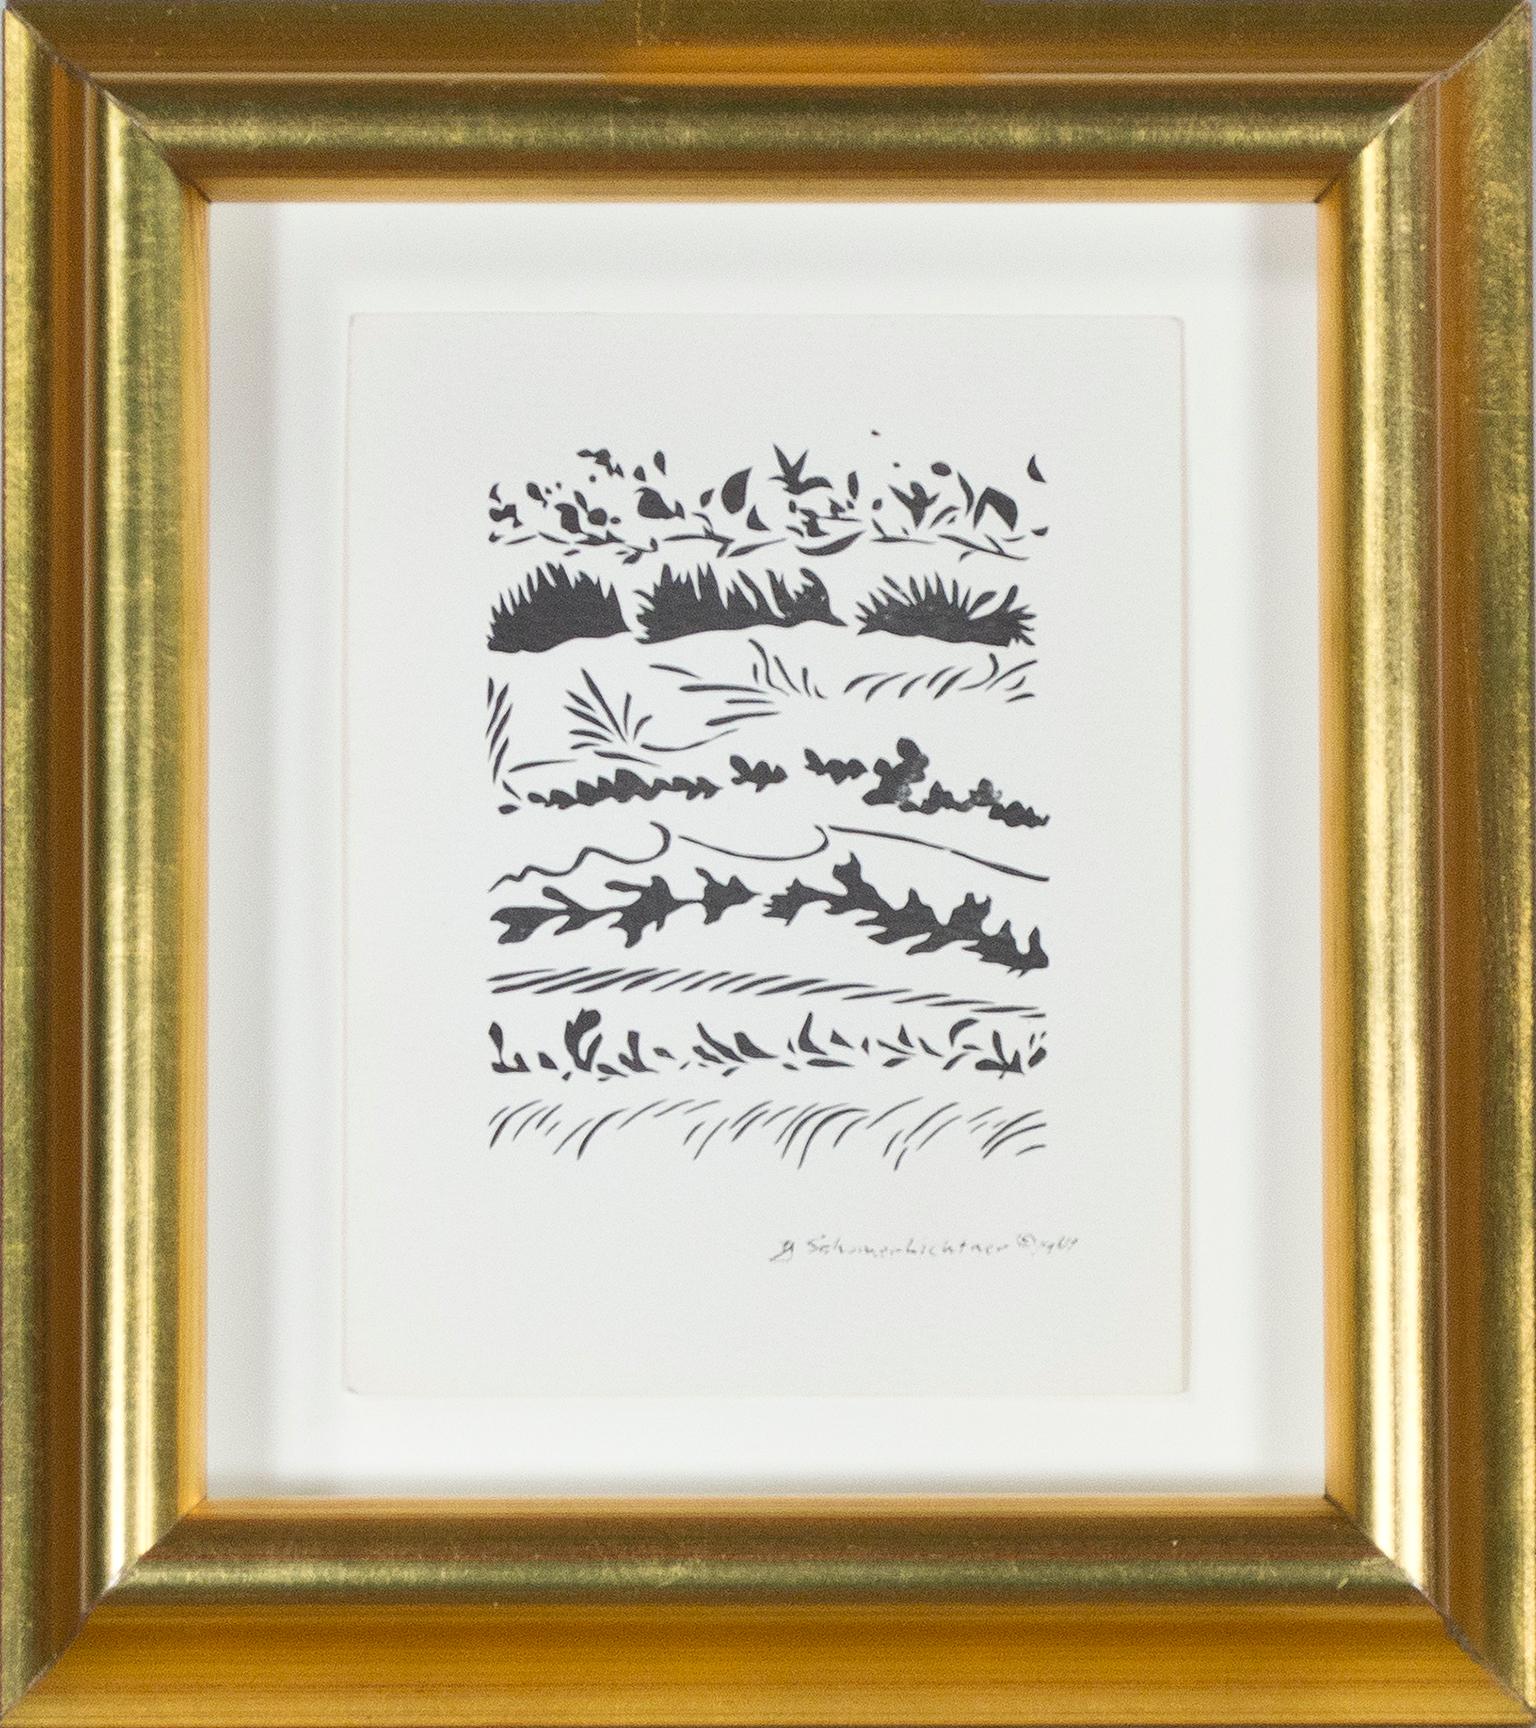 silhouettes d'hiver", une petite et délicate gravure, est une lithographie offset originale de l'artiste de Milwaukee, Schomer Lichtner. La composition présente des registres de feuillage, émergeant du blanc du papier comme s'ils sortaient du sol